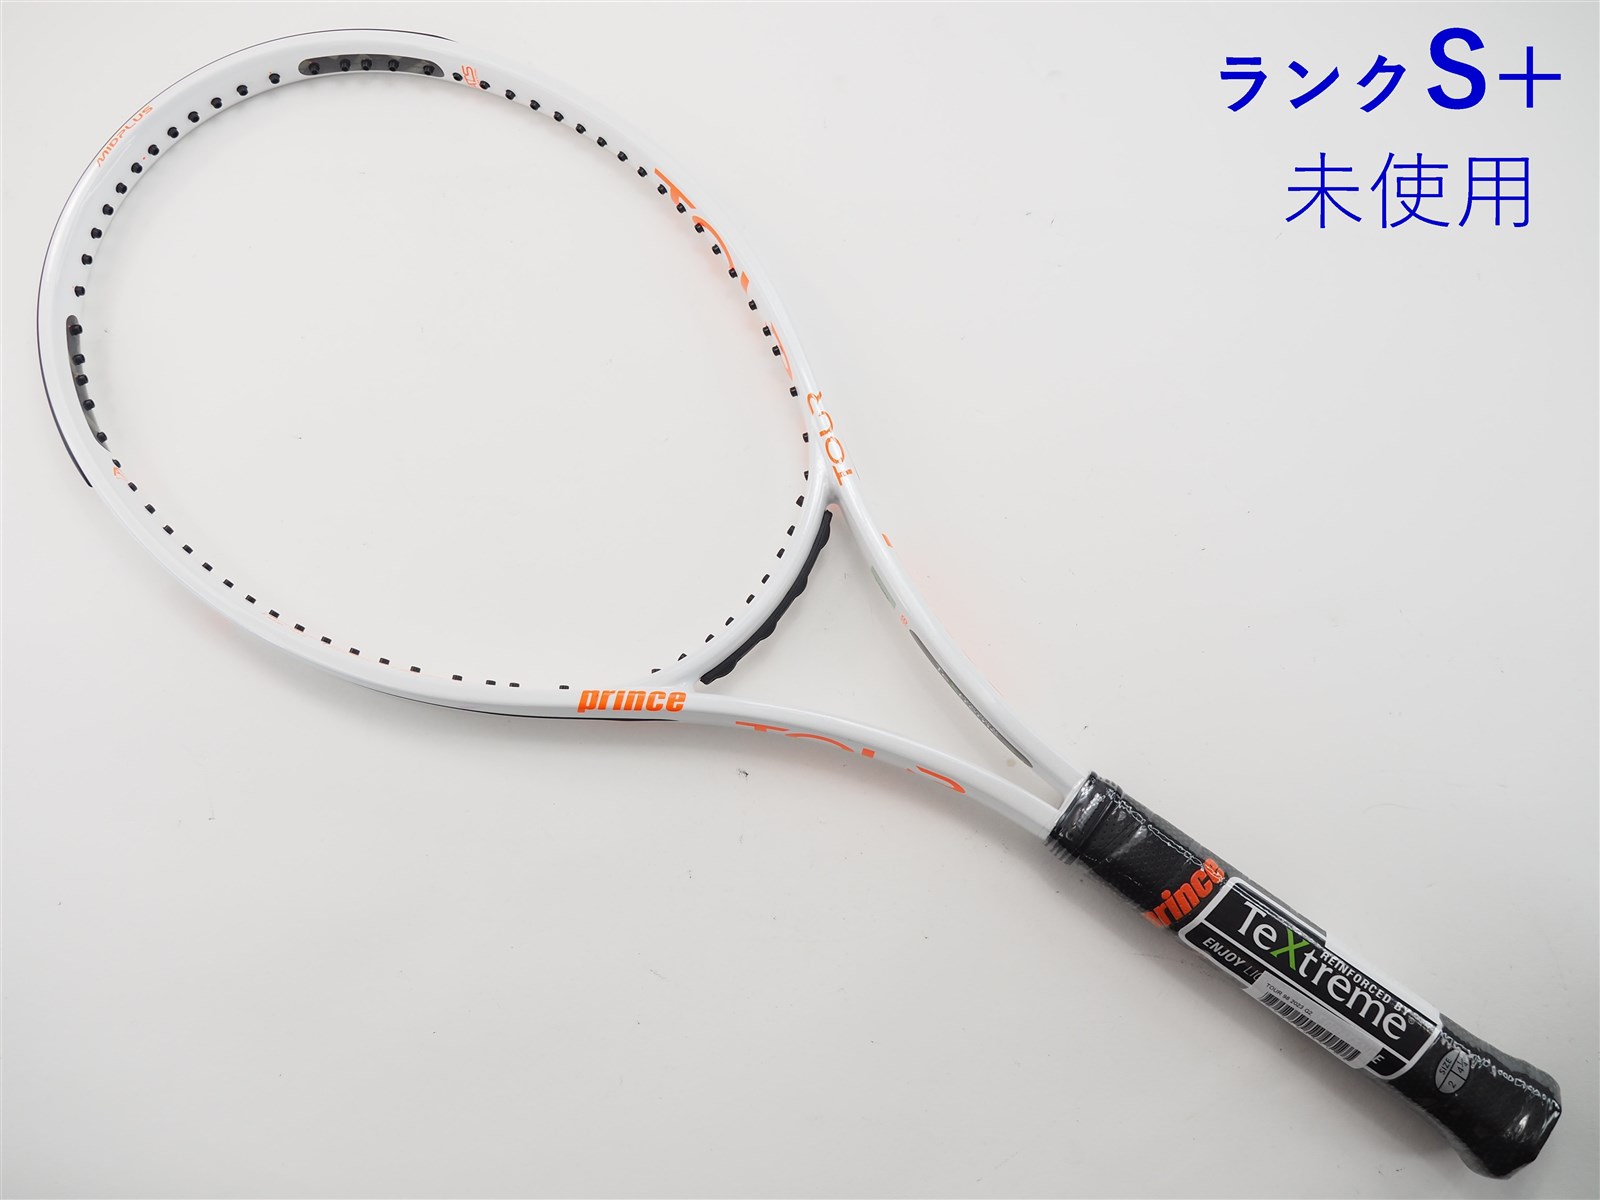 100平方インチプリンス  ツアー100(310g) G2  現行モデル テニスラケット